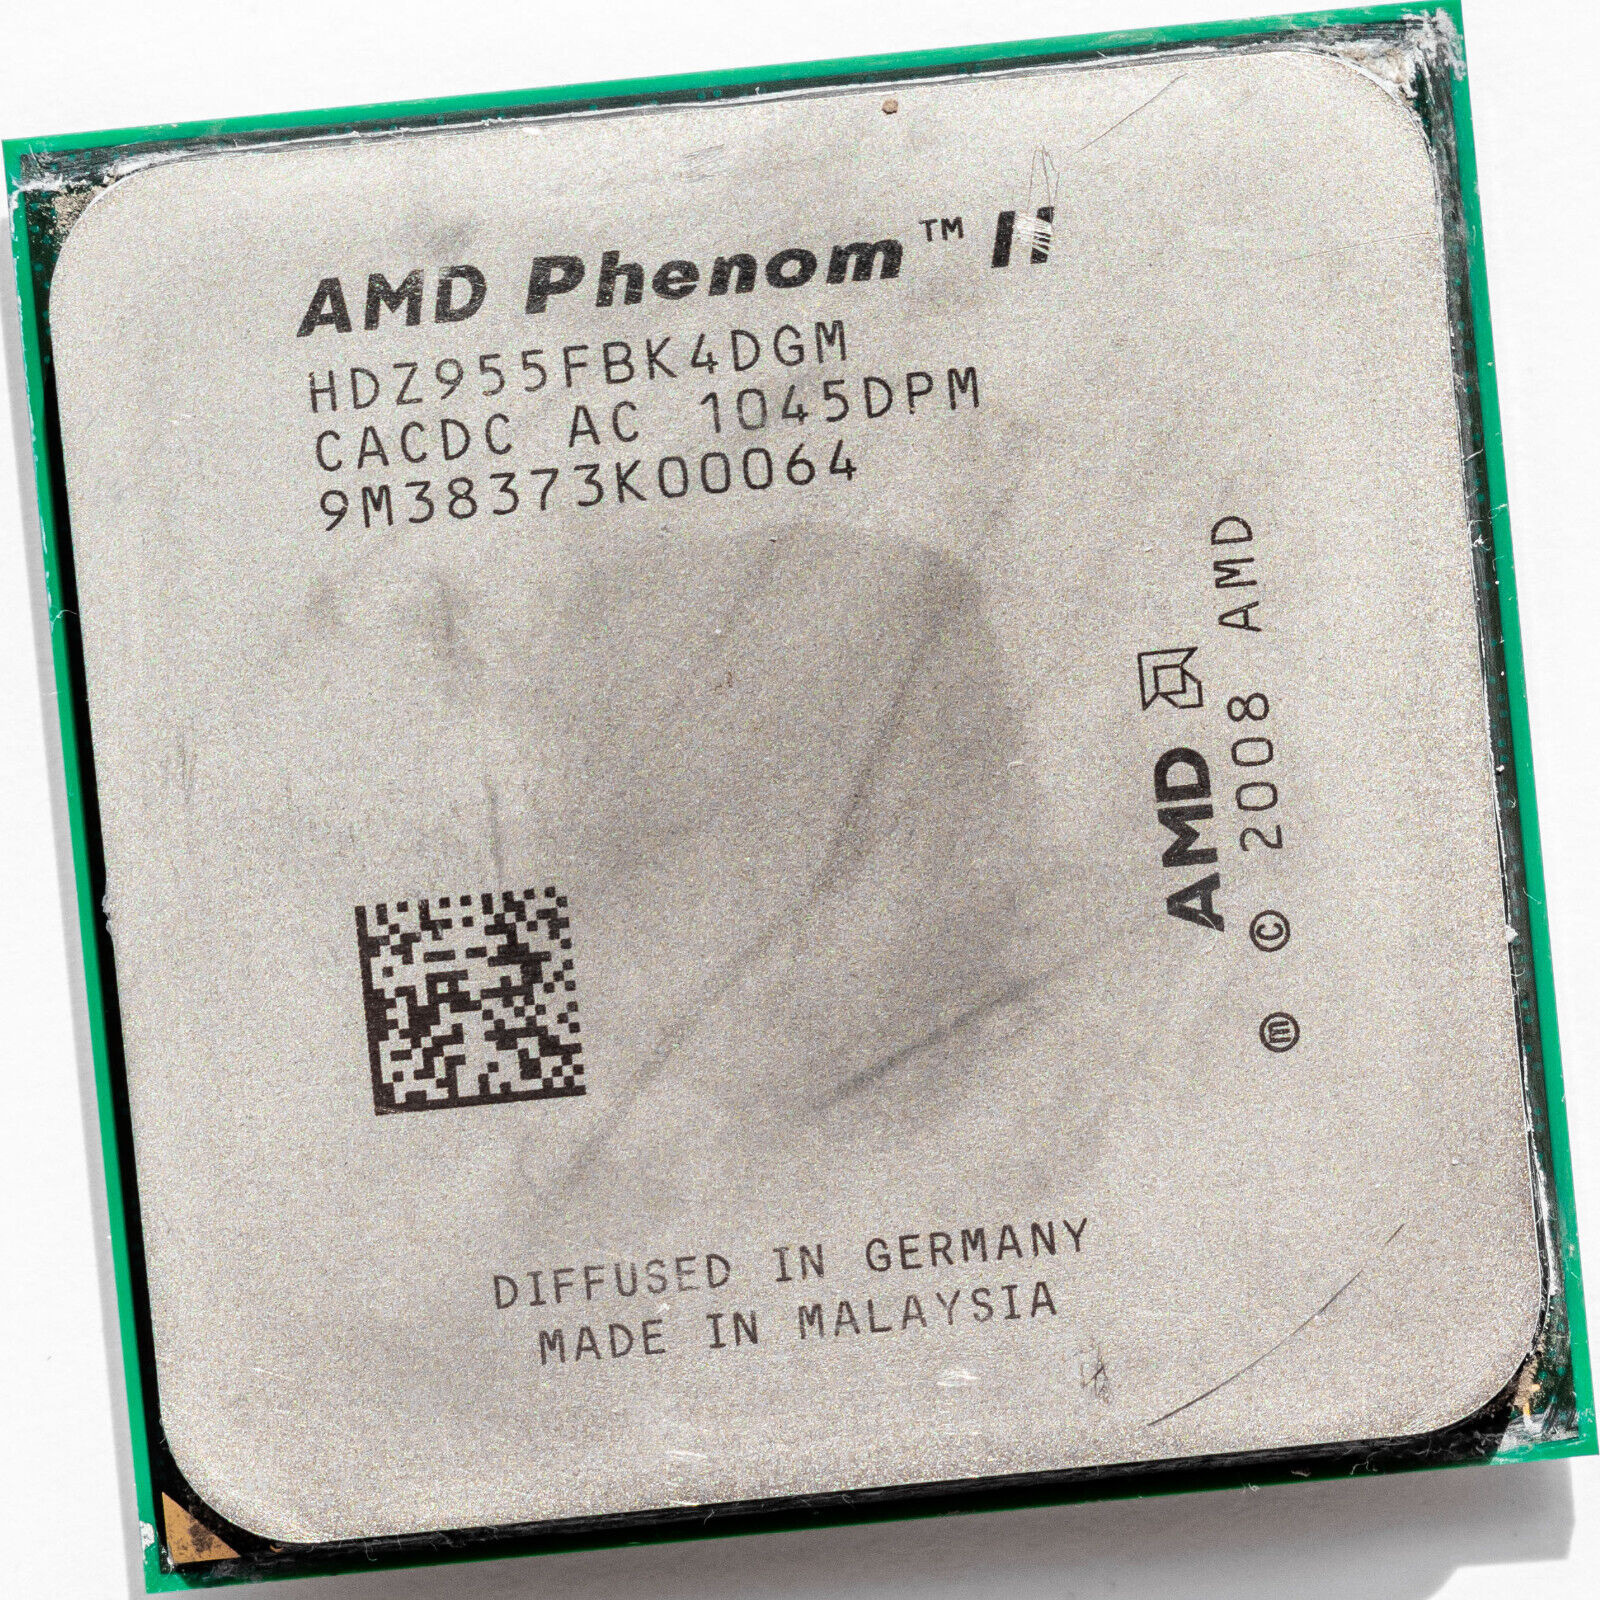 AMD Phenom II X4 955 3.2GHz Quad Core AM3 Processor HDZ955FBK4DGM 125W